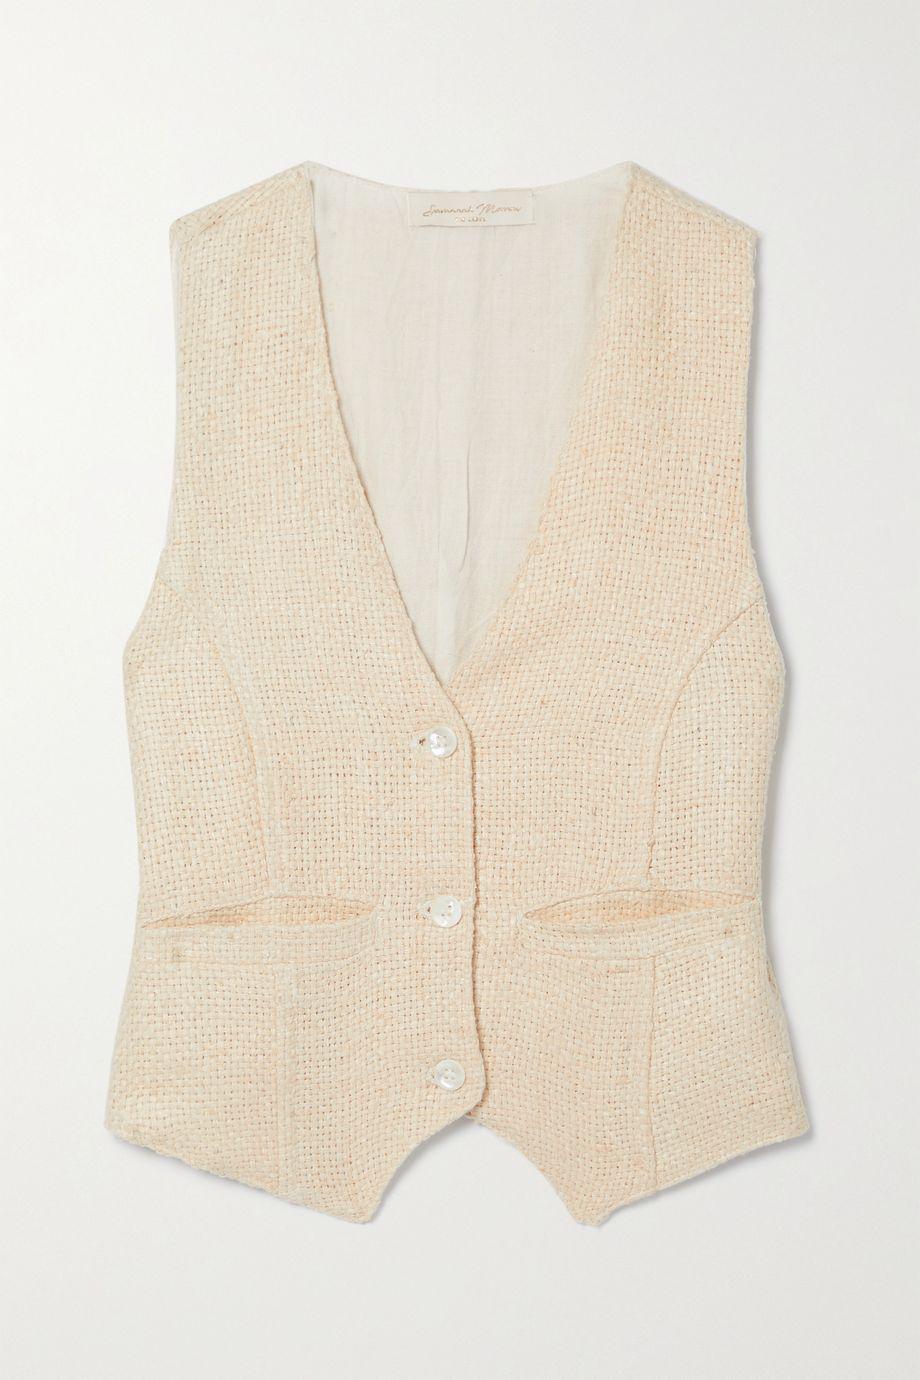 + NET SUSTAIN woven peace silk vest by SAVANNAH MORROW